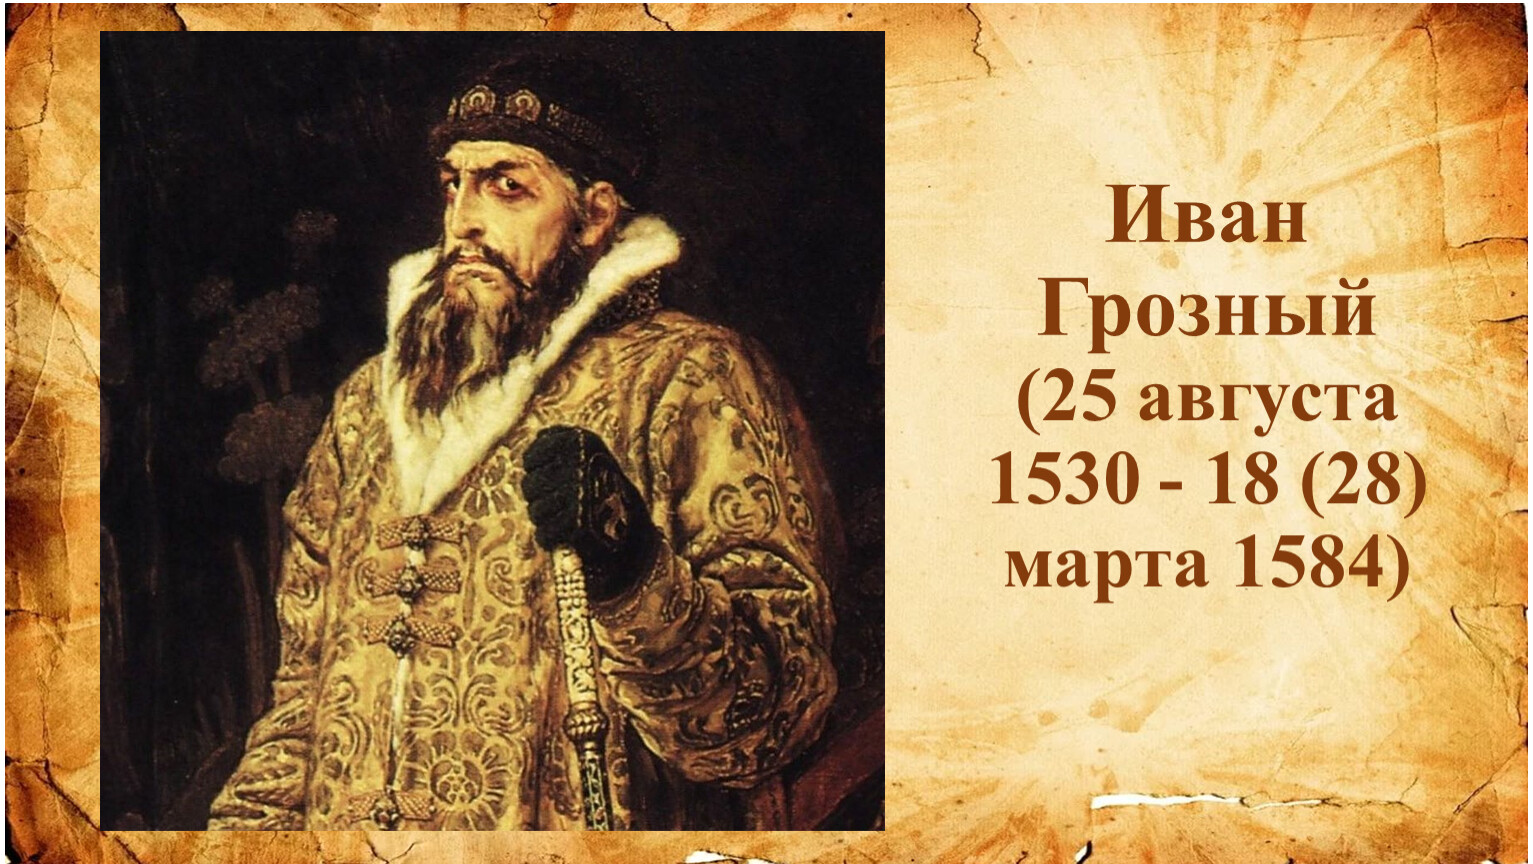 Иван Грозный 18 марта 1584 г